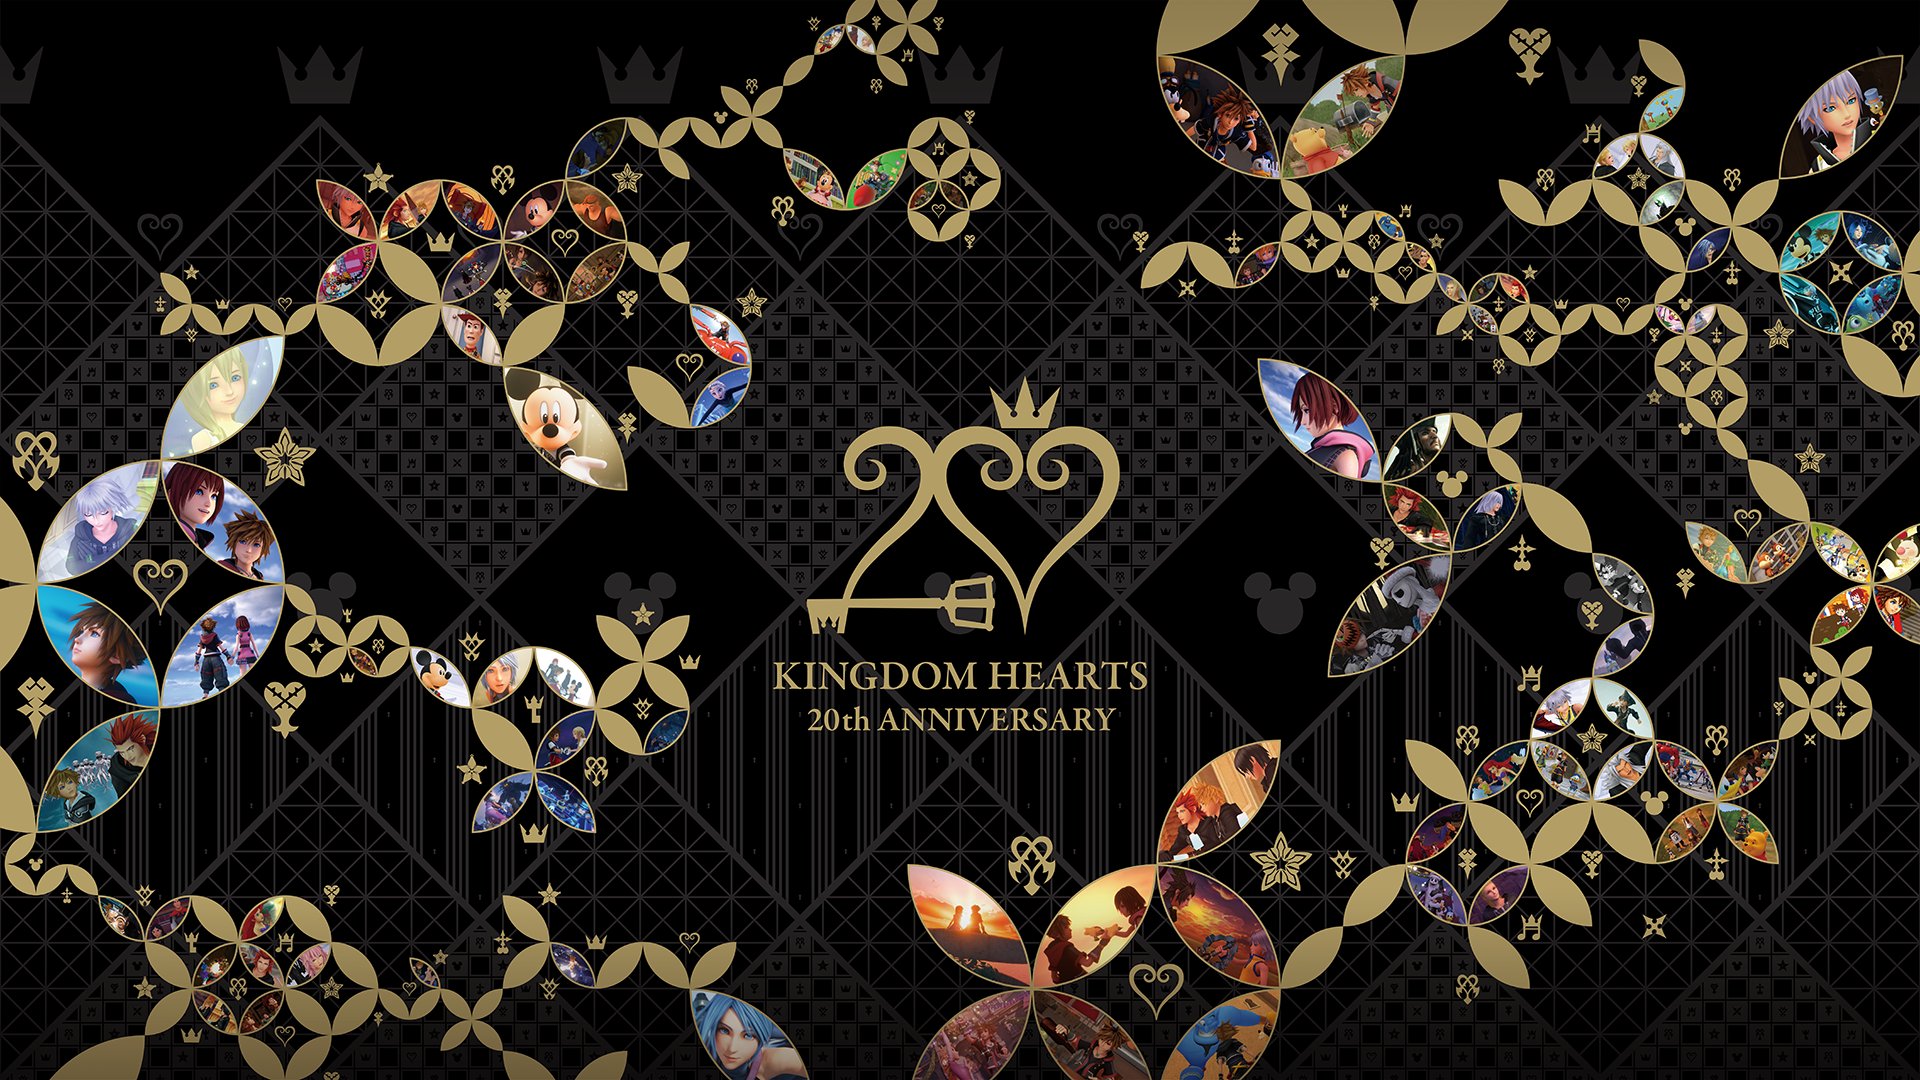 SQUARE ENIX AND DISNEY ANNOUNCE DEVELOPMENT OF KINGDOM HEARTS IV  - Square  Enix North America Press Hub